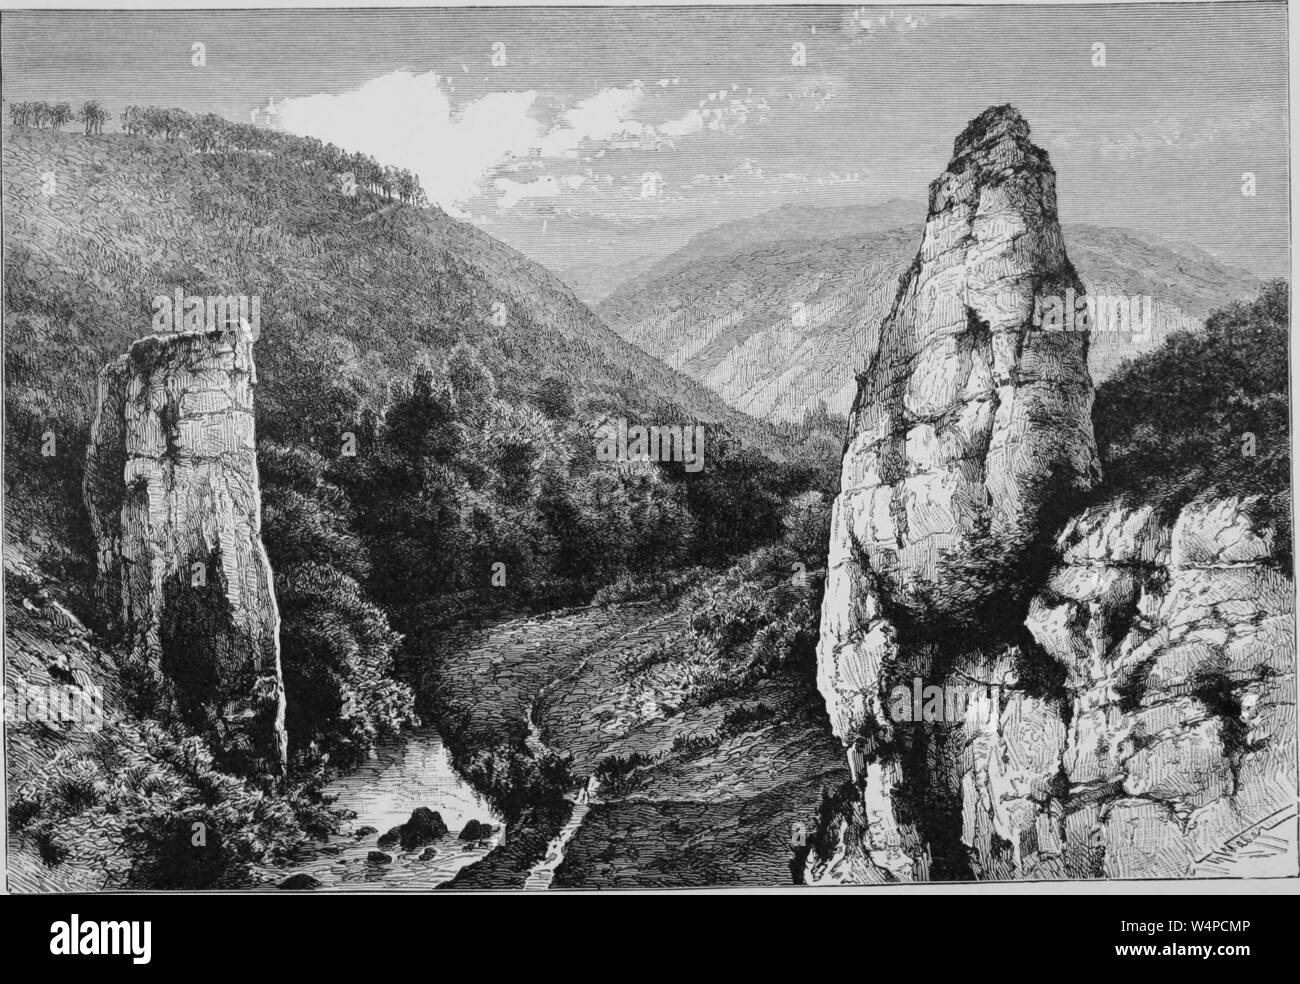 Gravure de l'Ilam Rock, Dovedale, Angleterre, du livre "La terre et ses habitants" par Elisee Reclus, 1881. Avec la permission de Internet Archive. () Banque D'Images